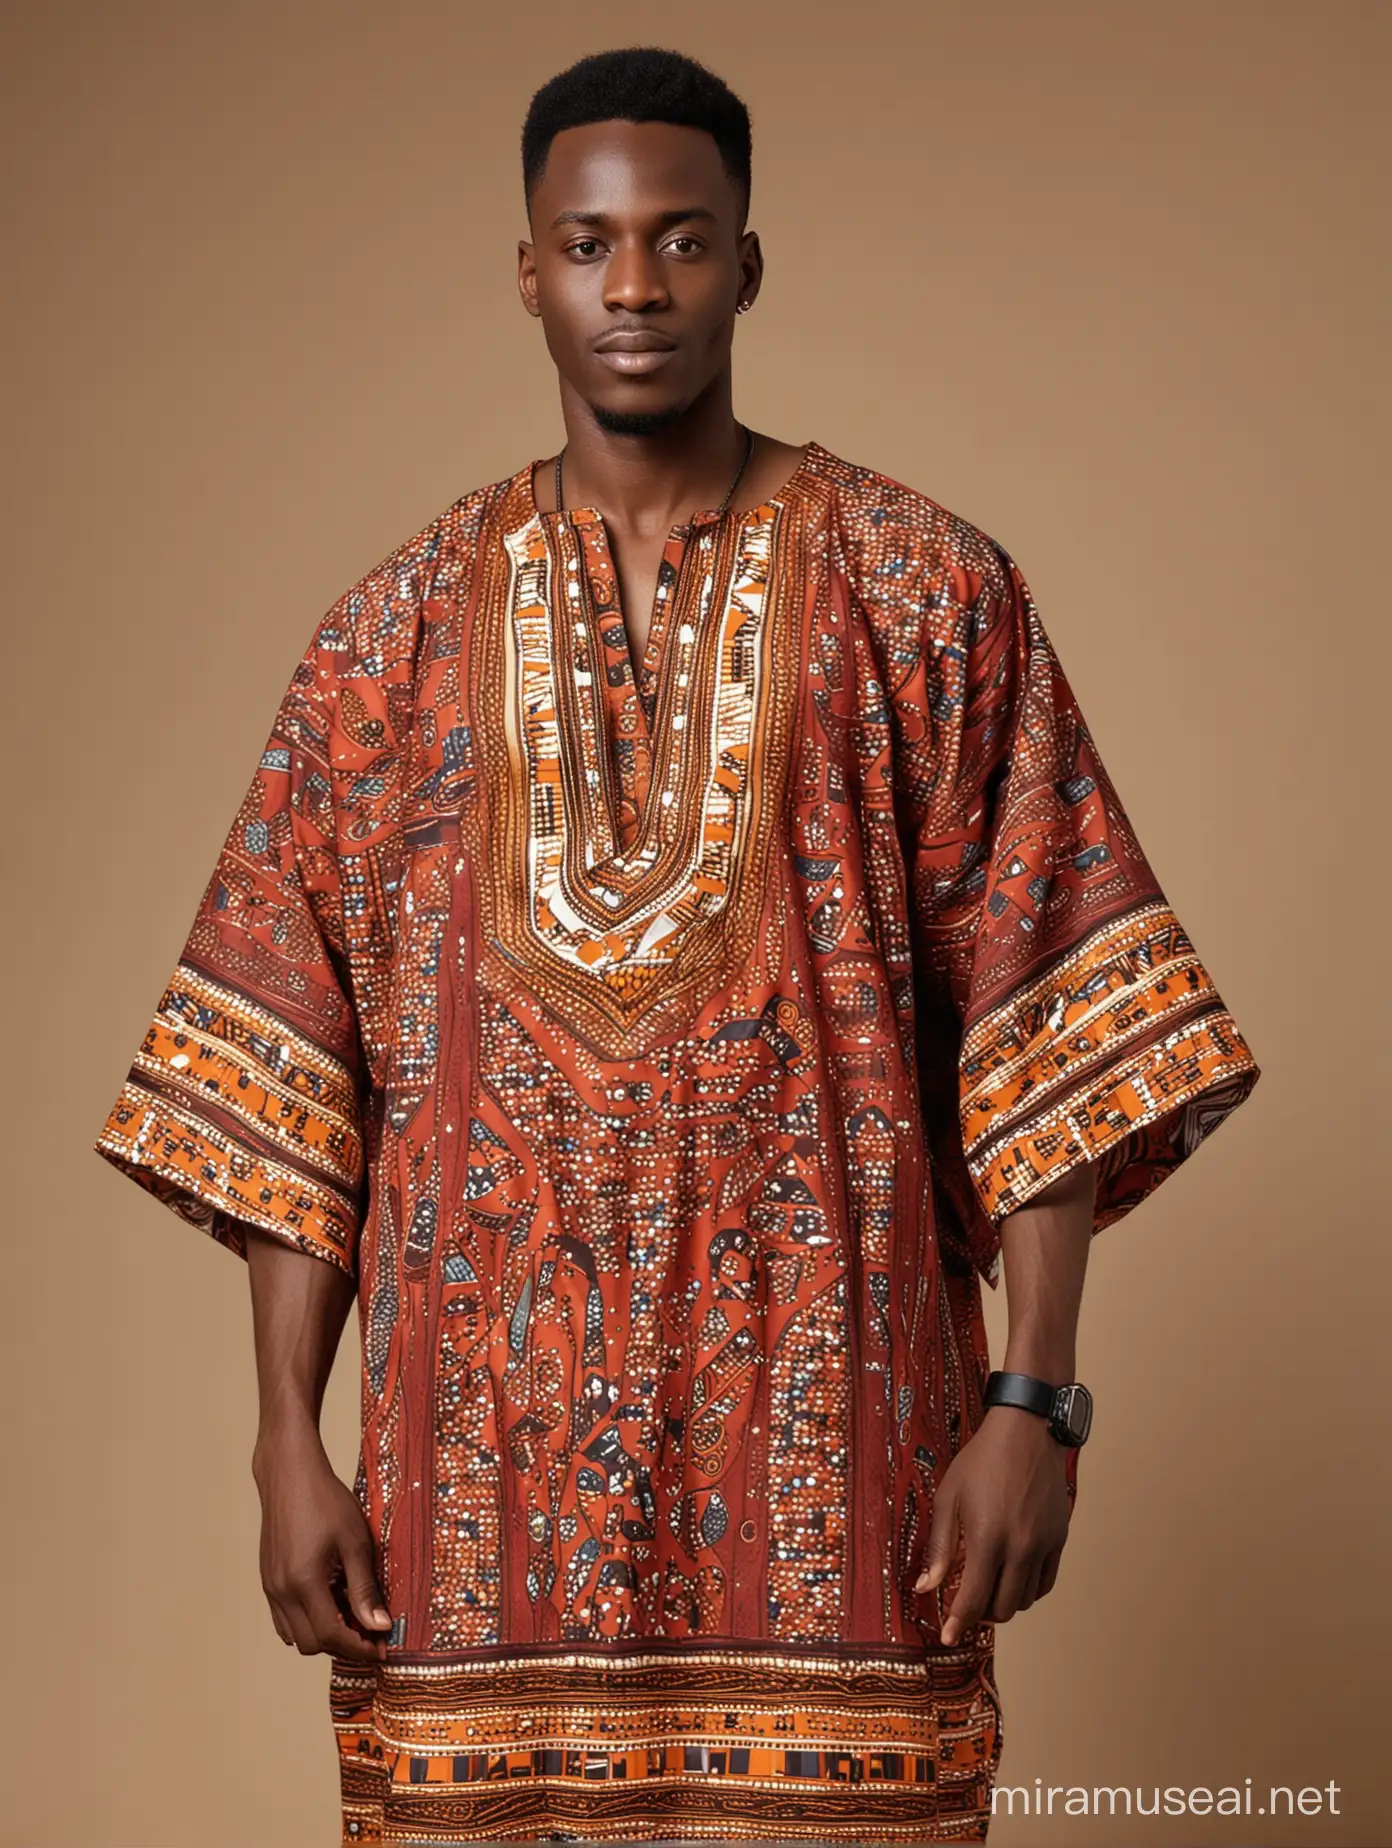 Fit African man wearing an African kaftan fabric